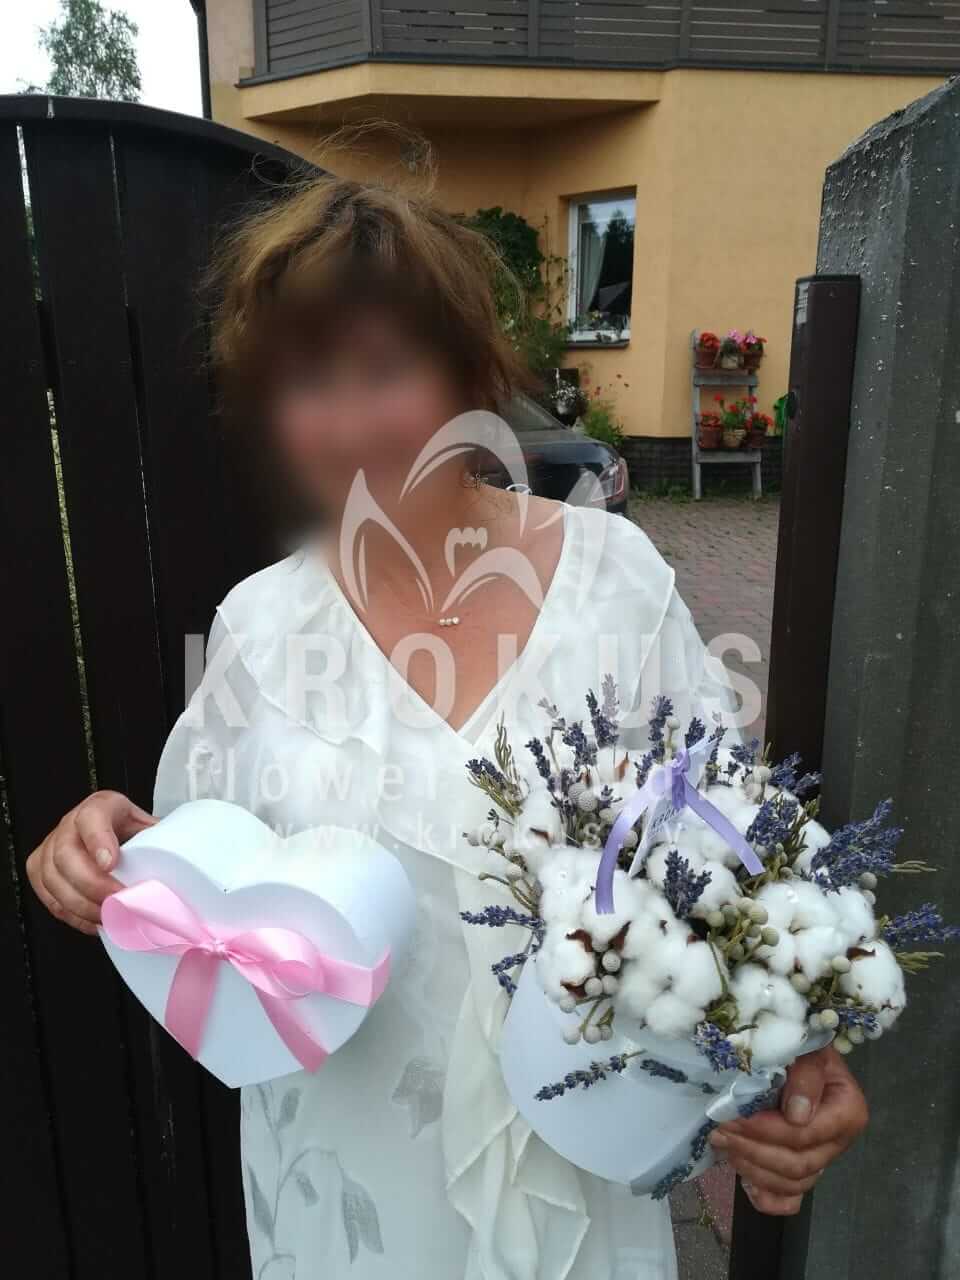 Доставка цветов в город Latvia (коробкабрунияхлопоклаванда)